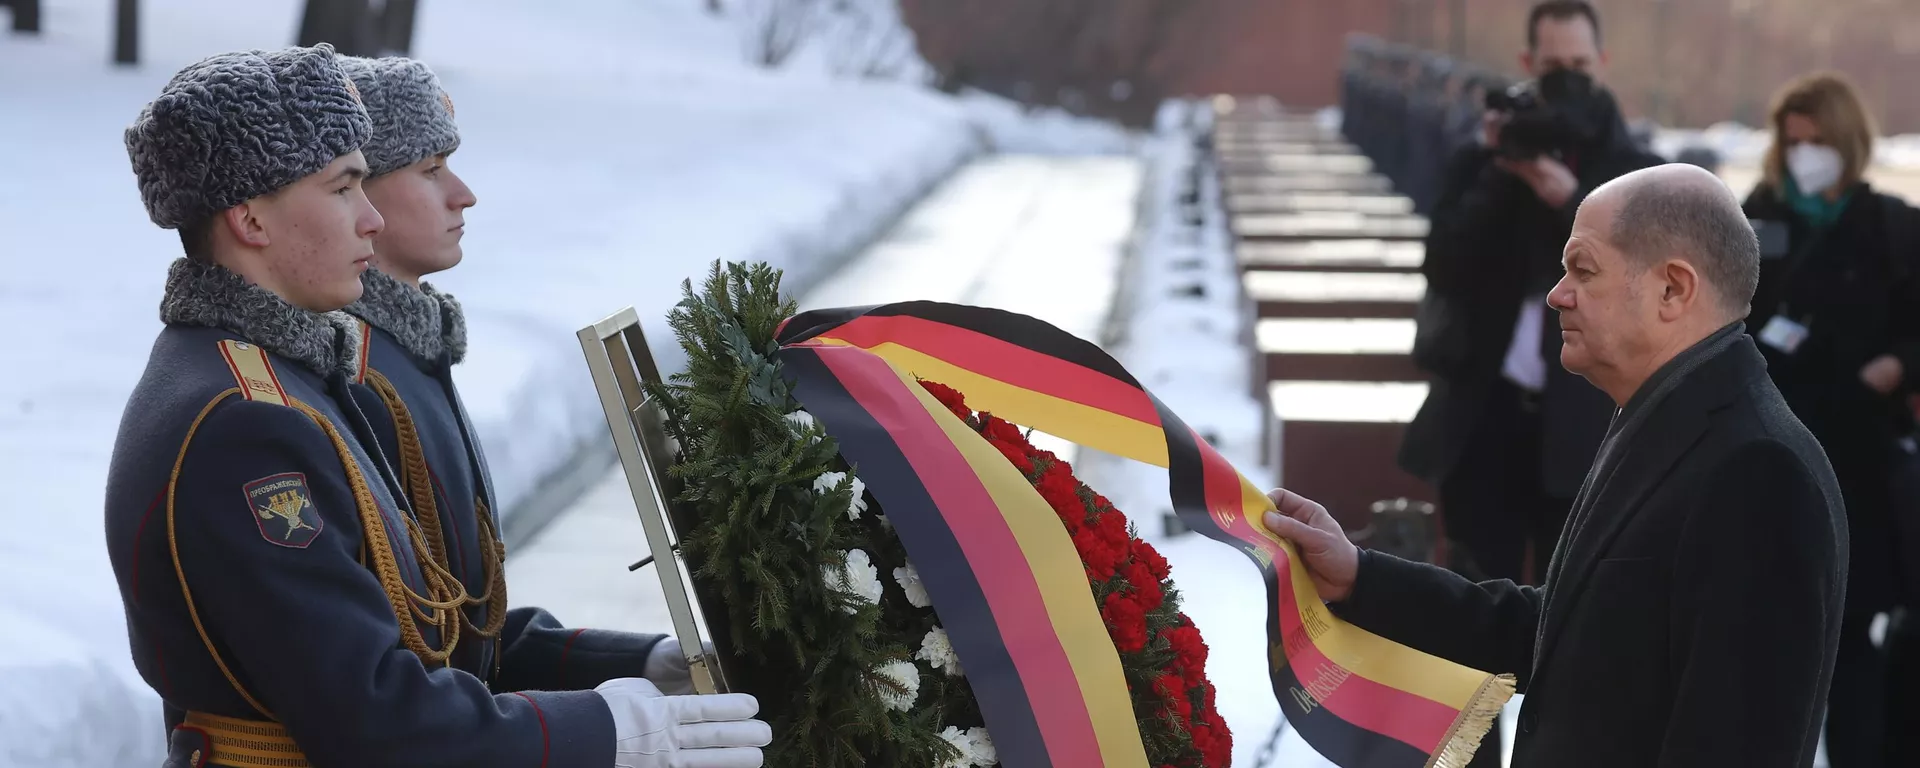 O chanceler alemão, Olaf Scholz, participa de cerimônia de colocação de coroas de flores no túmulo do soldado desconhecido perto do muro do Kremlin, em Moscou, na Rússia (foto de arquivo) - Sputnik Brasil, 1920, 06.01.2023